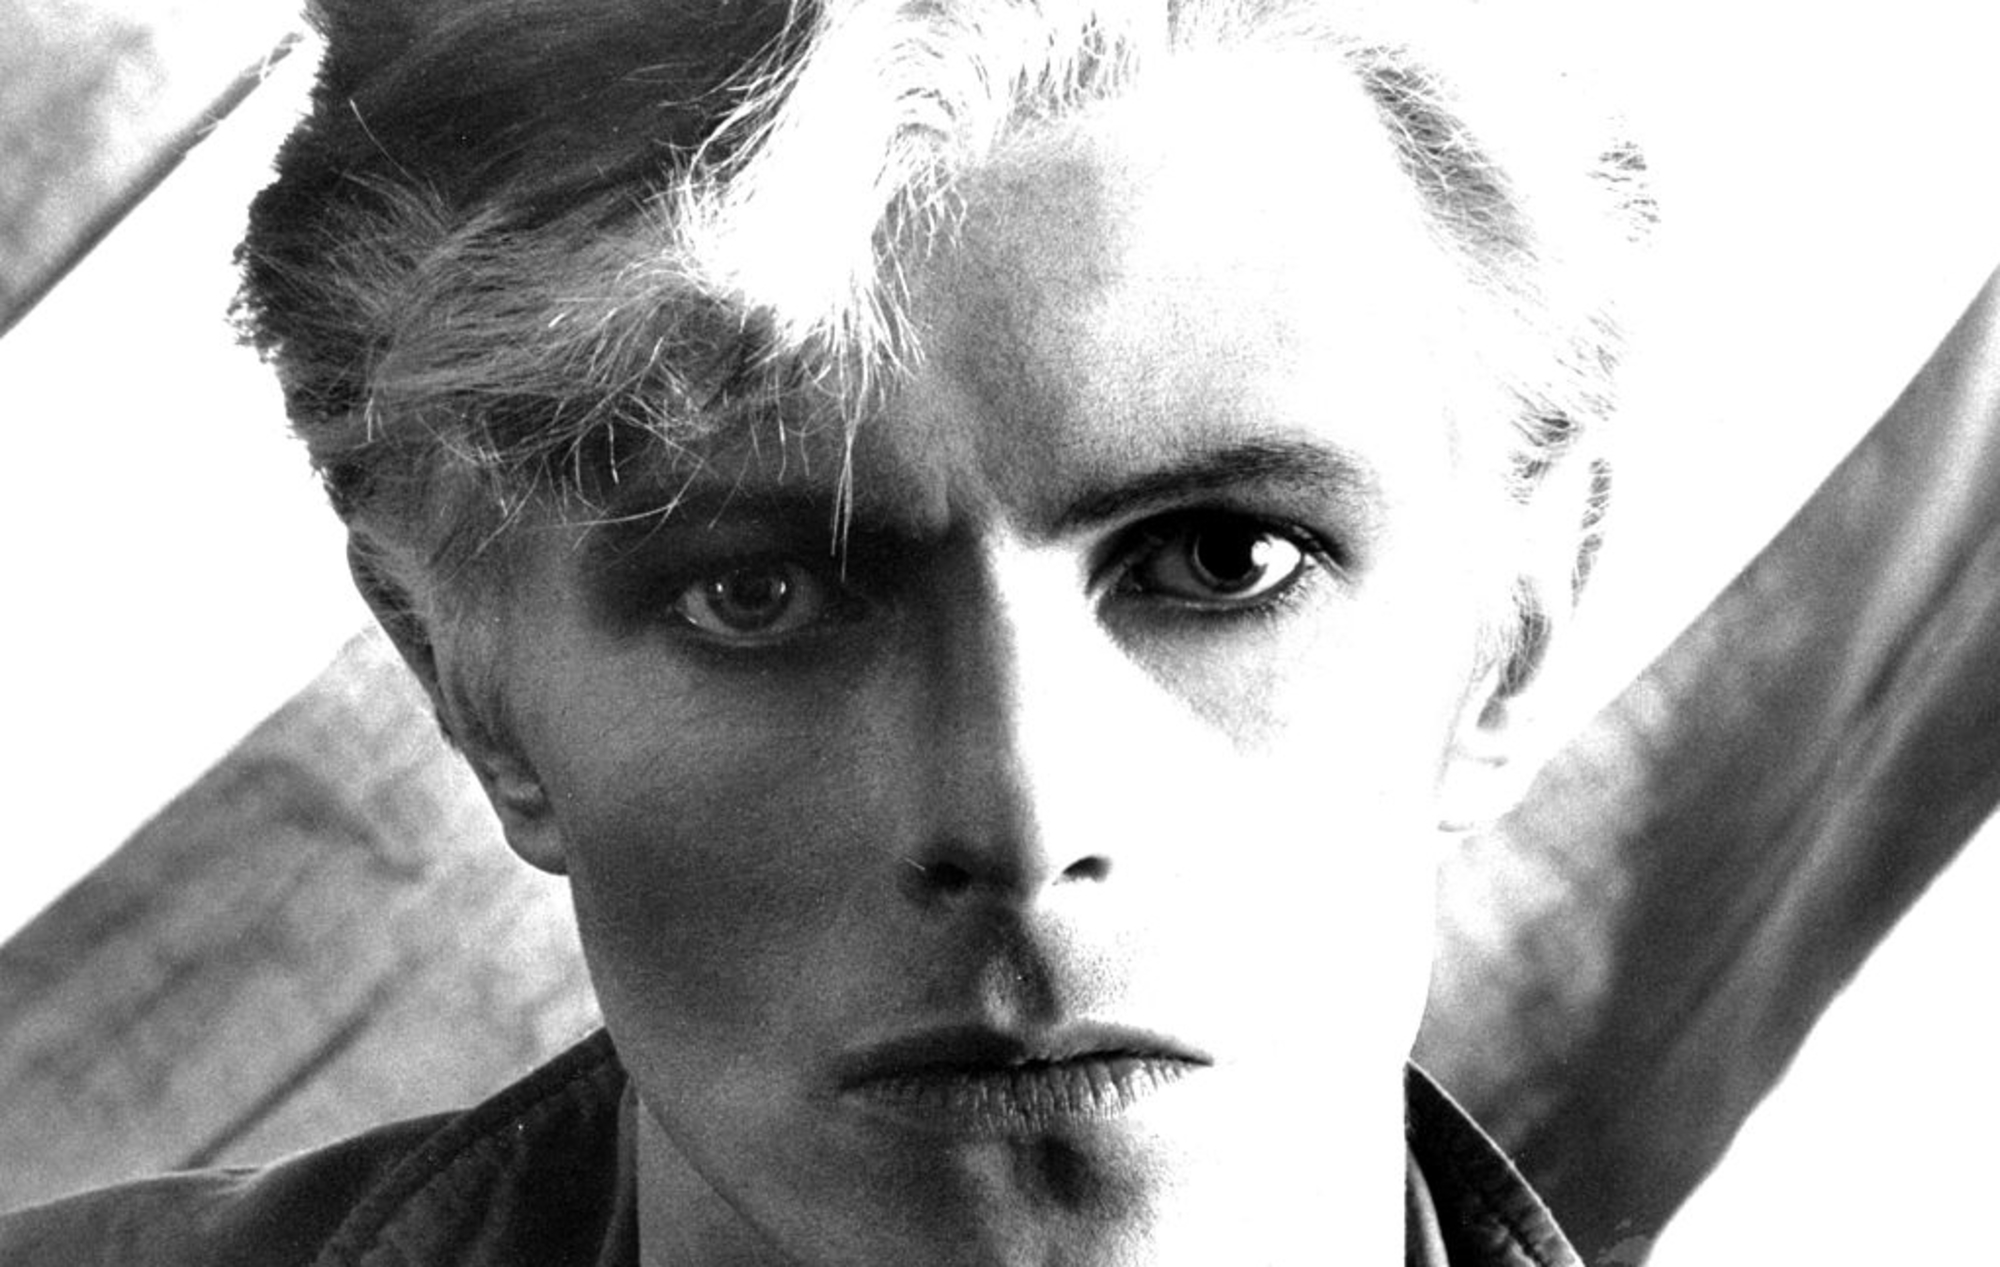 La exposición fotográfica de David Bowie se inaugurará en Brighton el próximo mes